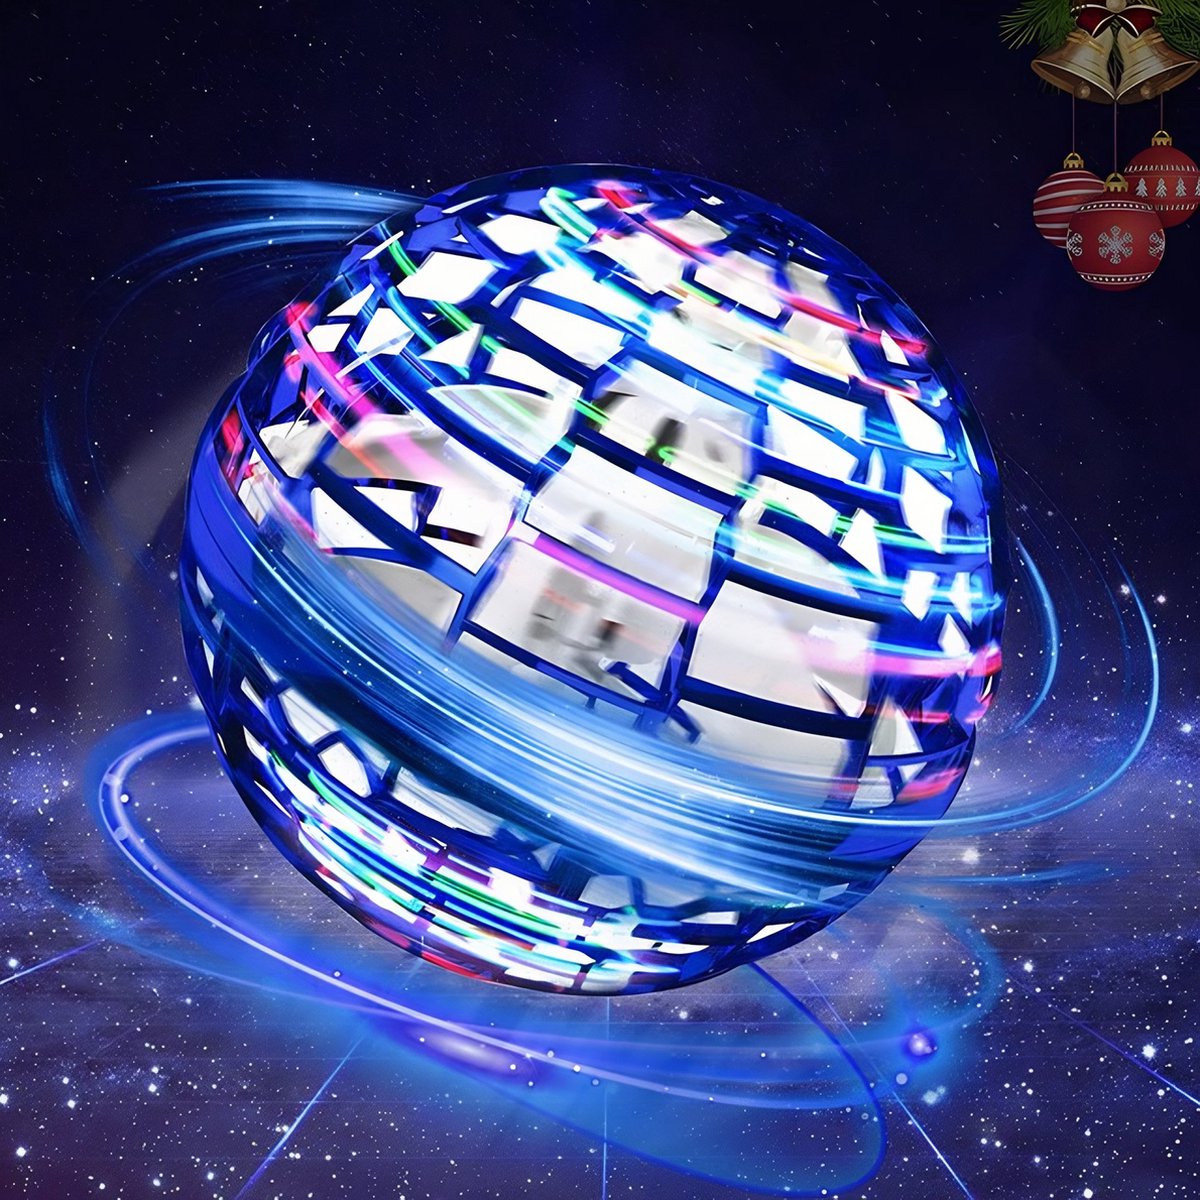 Balle volante magique LED – La Planete des Jouets